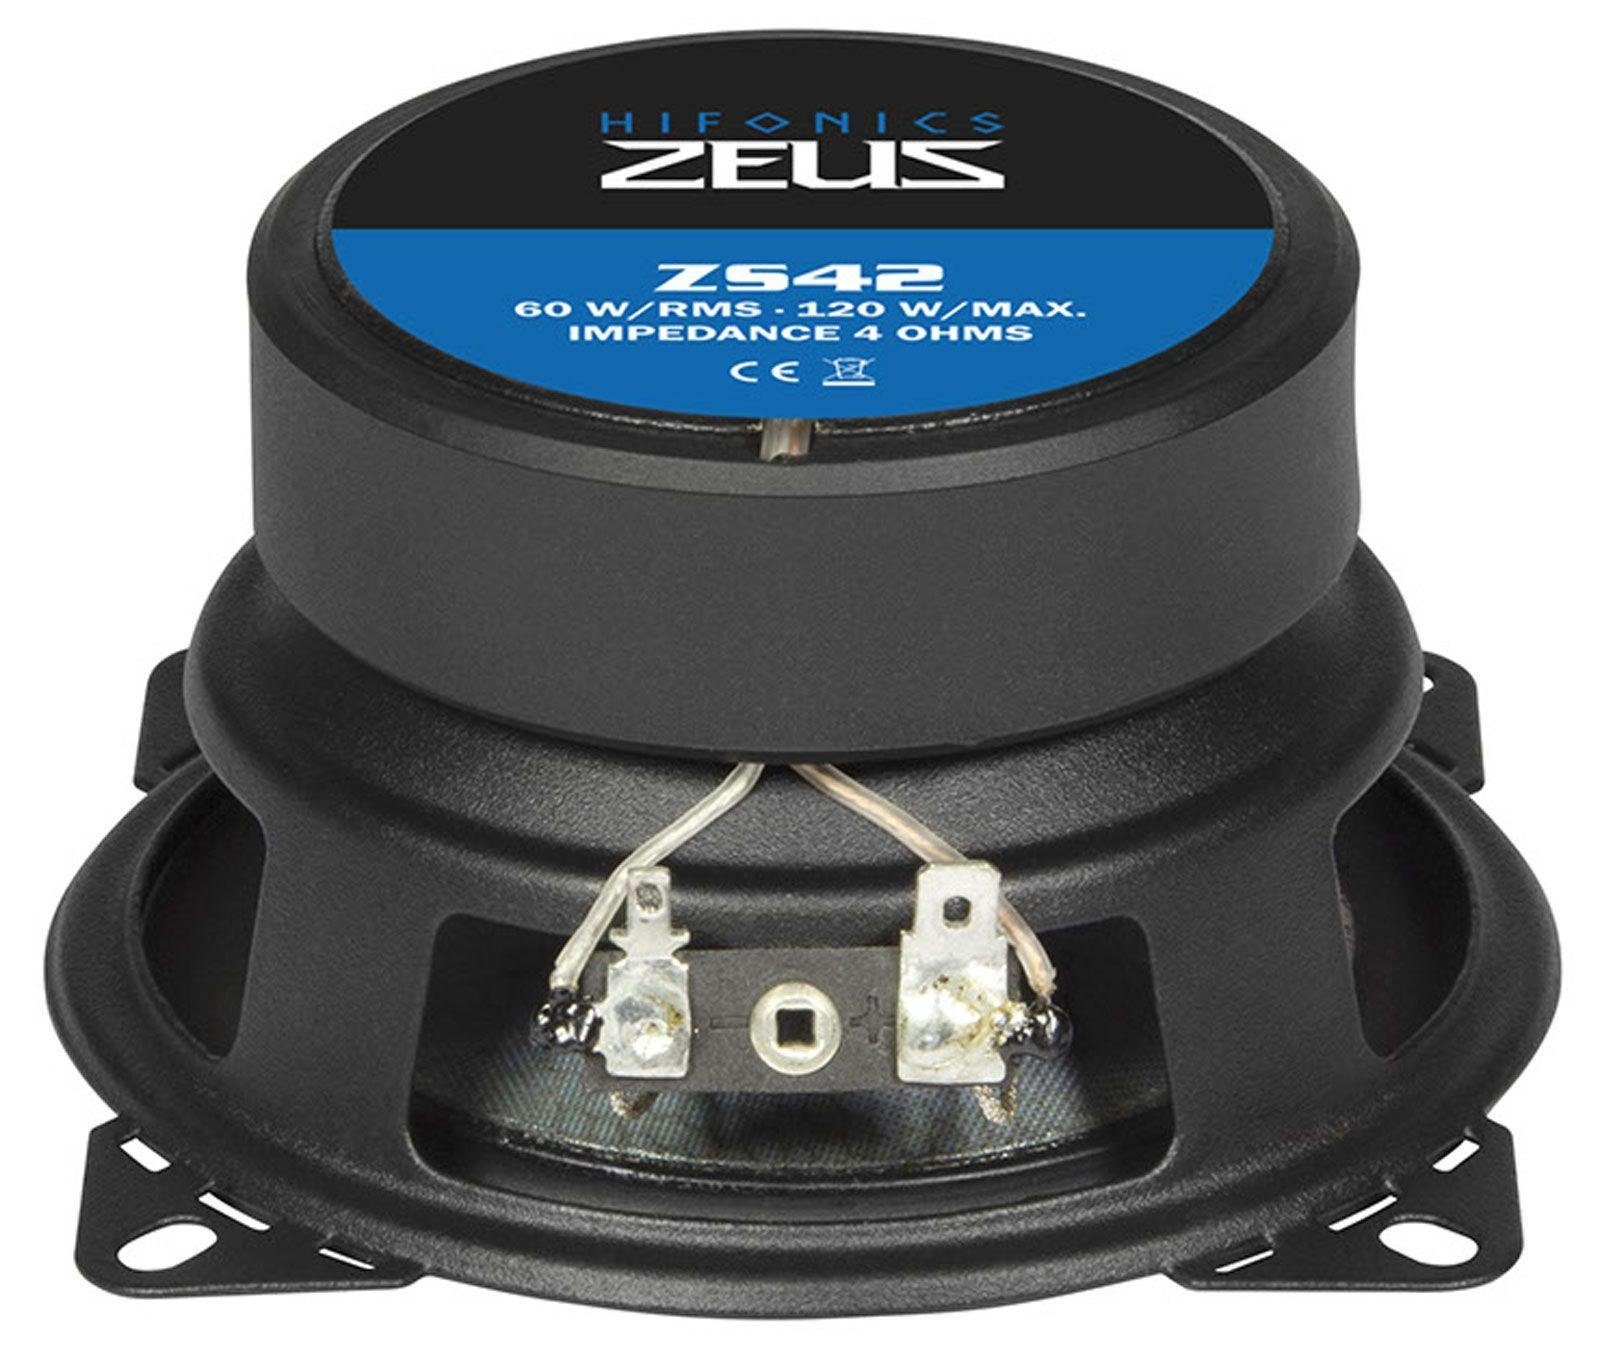 ZS-42 Paar 10cm 2-Wege Auto-Lautsprecher Zeus Koax 120 Watt Hifonics